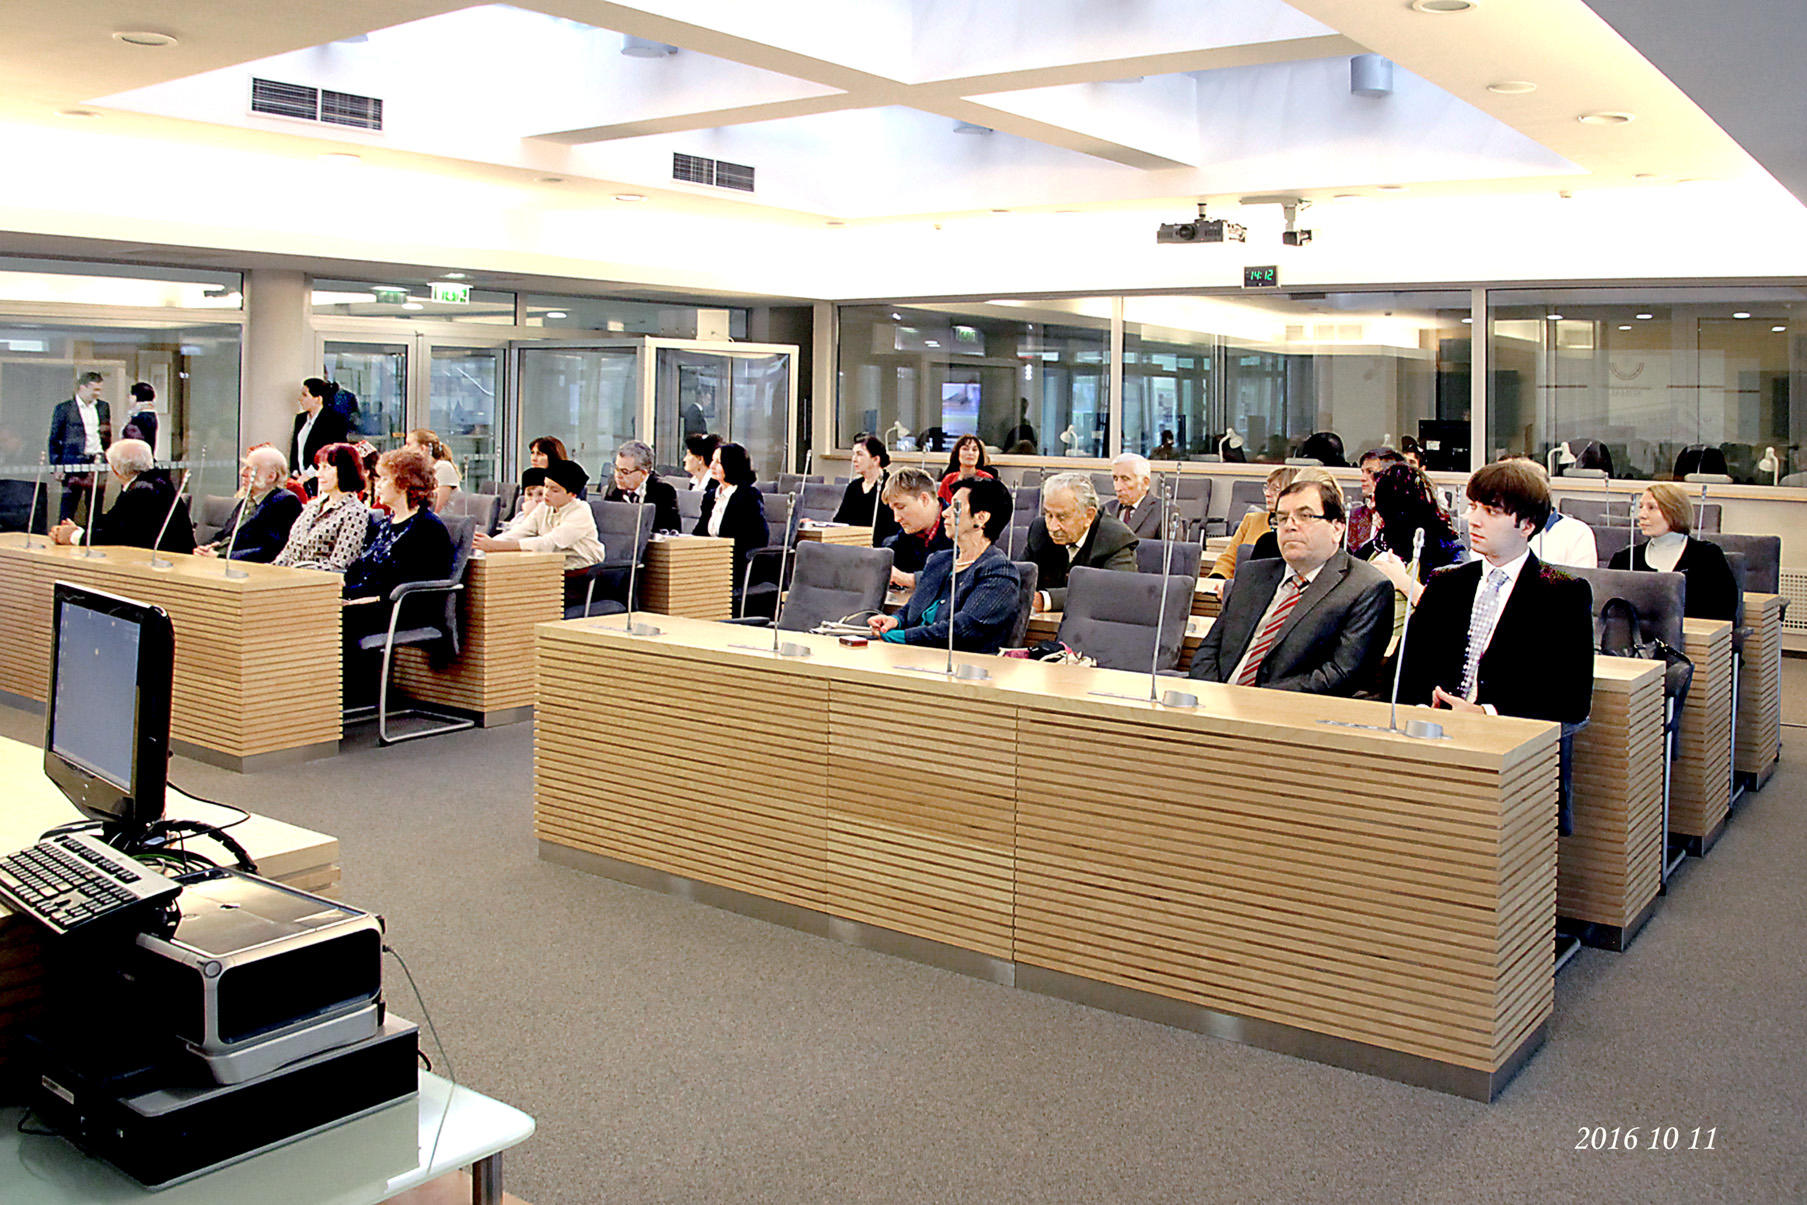 Azərbaycan diasporu Litva parlamentində keçirilən sərgidə təmsil olunub (FOTO)